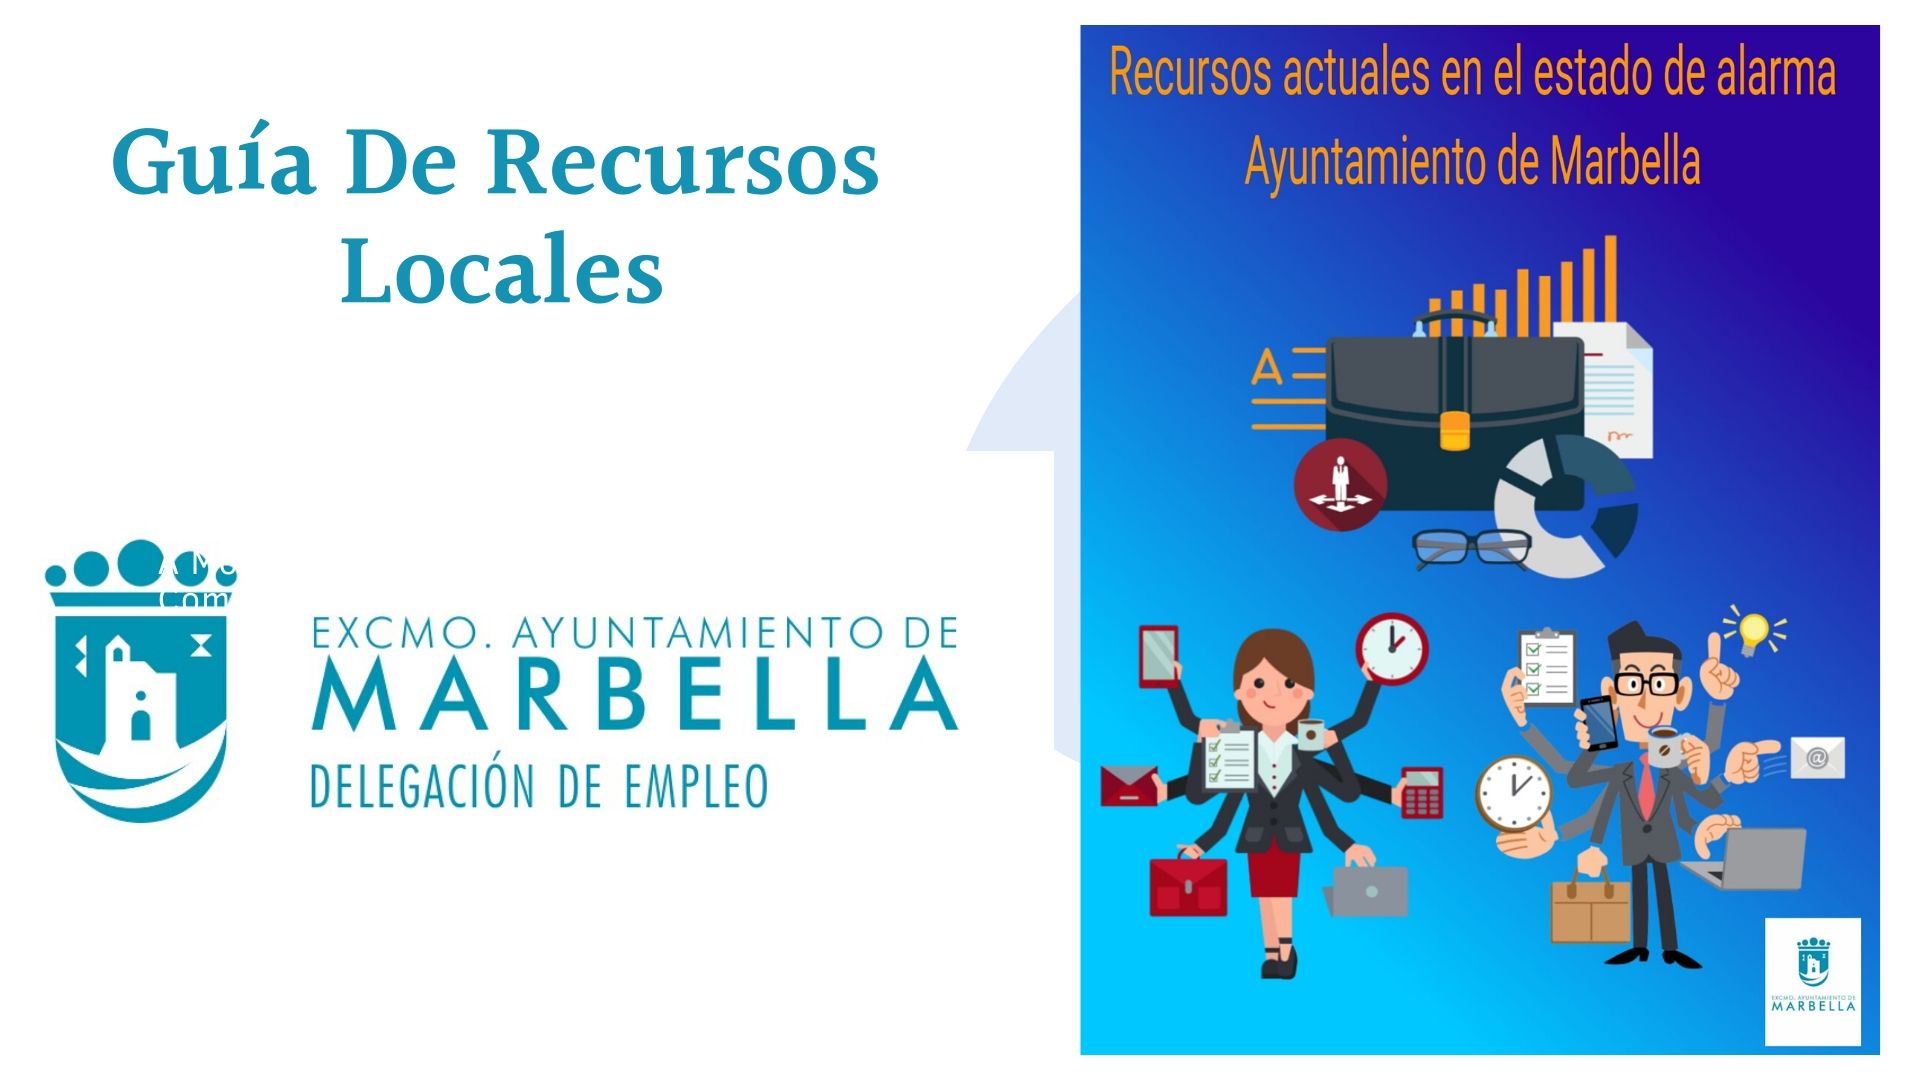 Guía de Recursos Locales en el Estado de Alarma - Delegación de Empleo